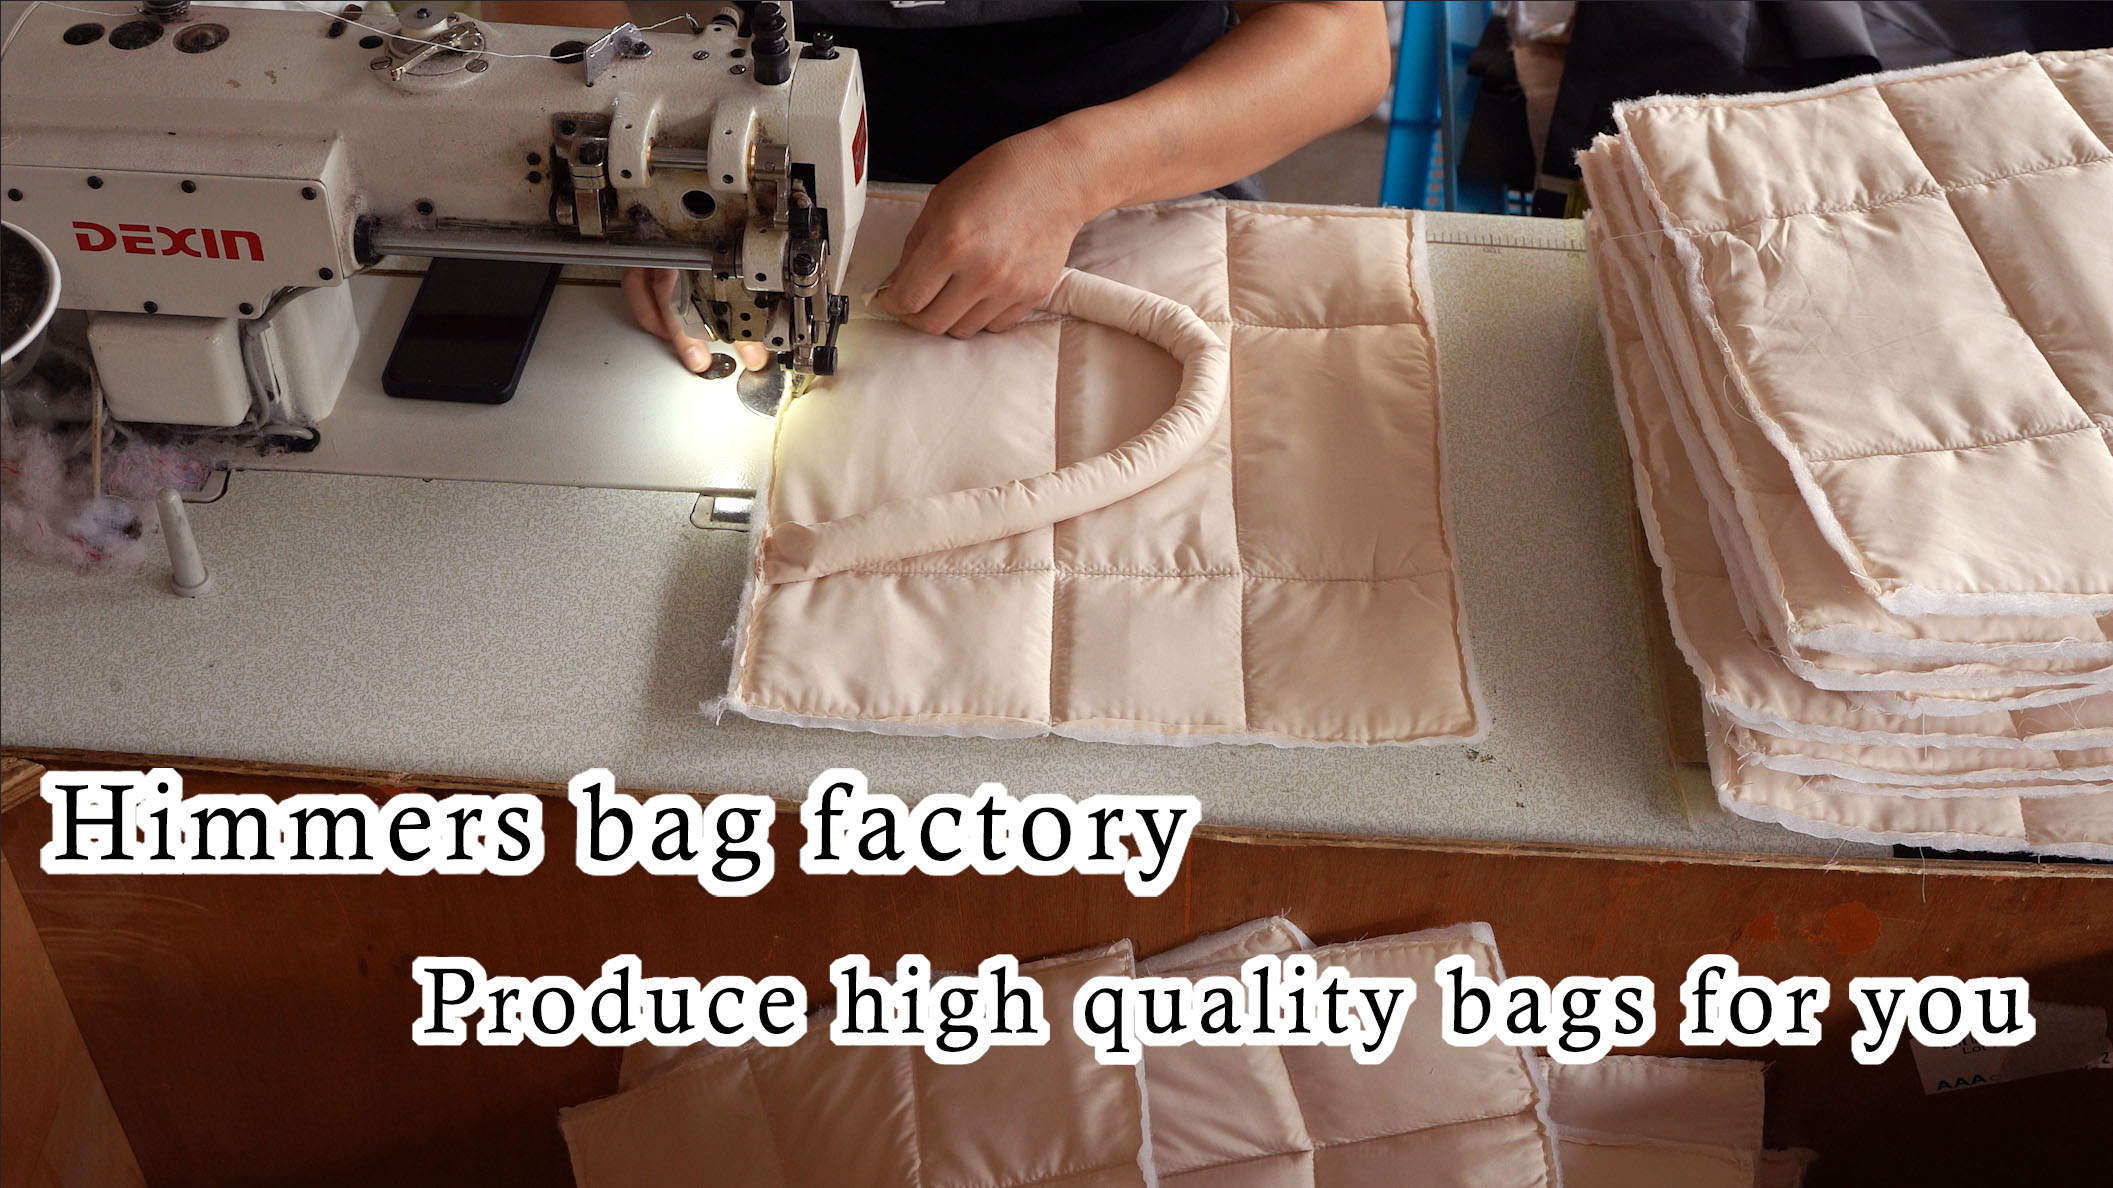 Fábrica de bolsas Himmers-Produza bolsas de alta qualidade para você